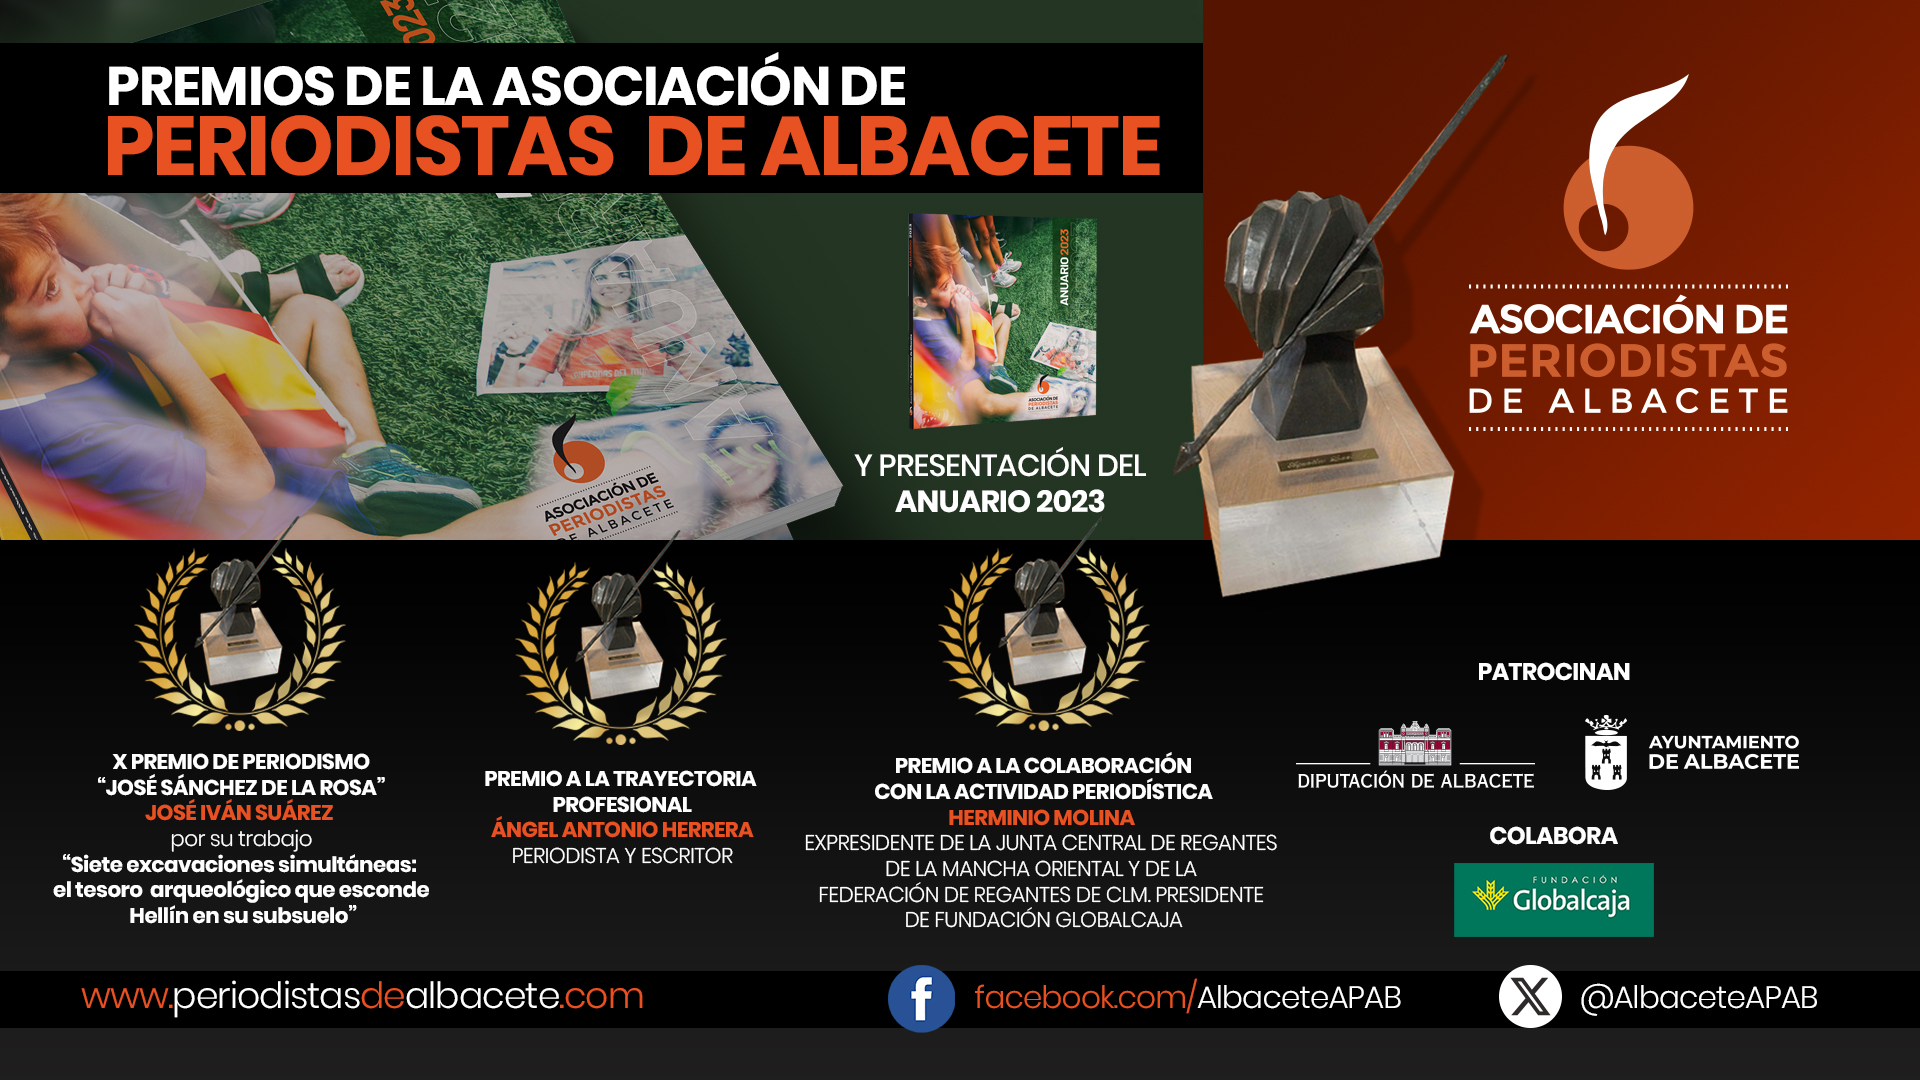 La Asociación de Periodistas de Albacete (APAB) entrega sus Premios Anuales de Periodismo el próximo sábado 20 de abril de 2024 a las 12h en el Centro de Interpretación del Agua de Albacete.